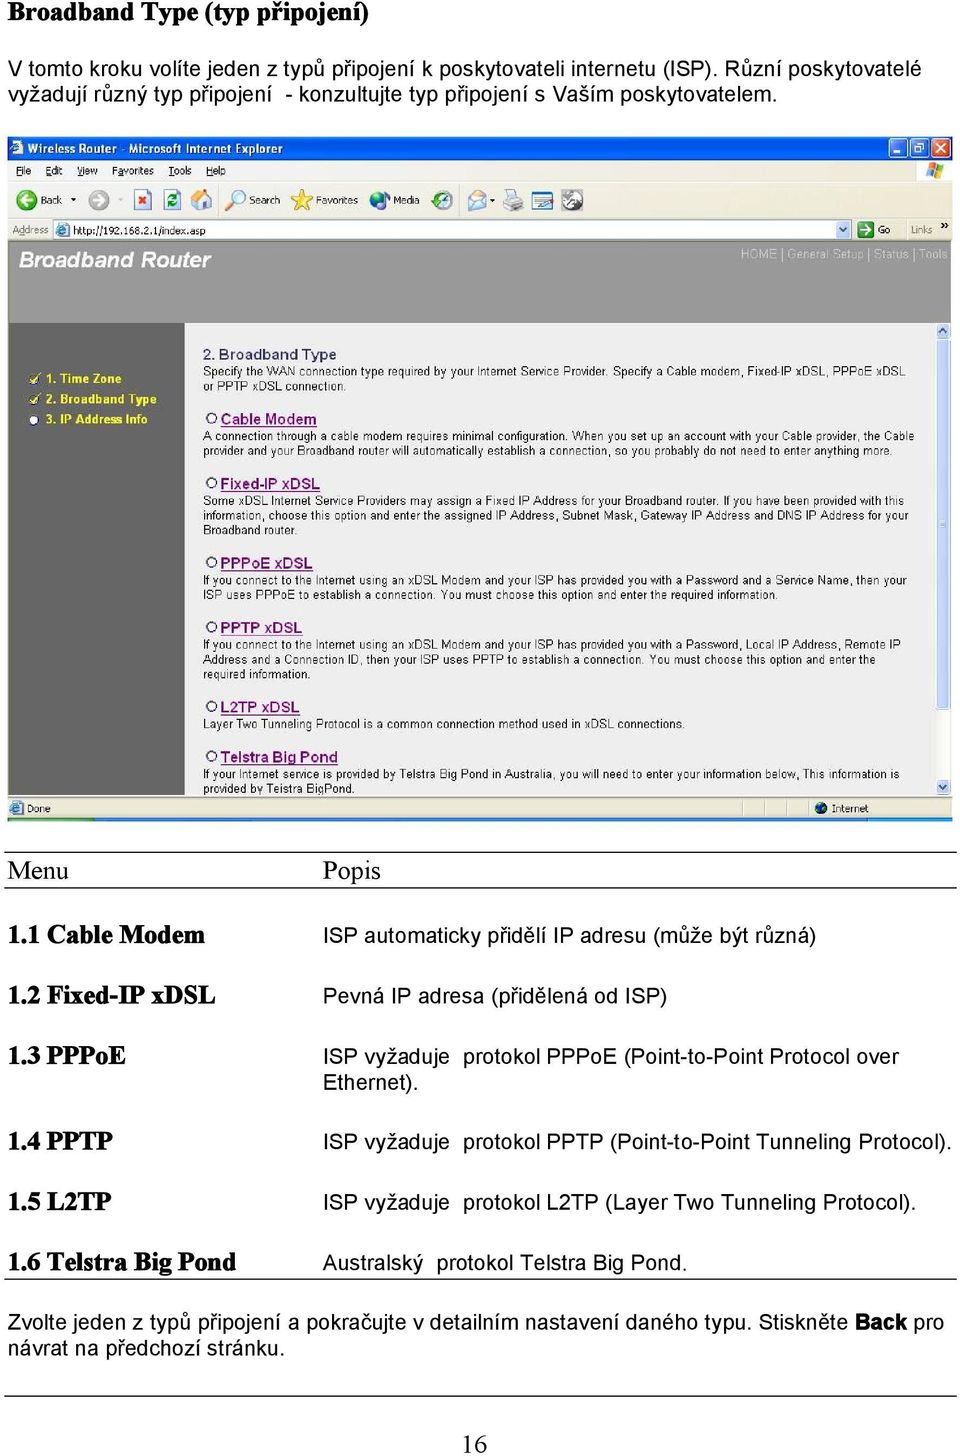 2 Fixed-IP xdsl Pevná IP adresa (přidělená od ISP) 1.3 PPPoE ISP vyžaduje protokol PPPoE (Point-to-Point Protocol over Ethernet). 1.4 PPTP ISP vyžaduje protokol PPTP (Point-to-Point Tunneling Protocol).